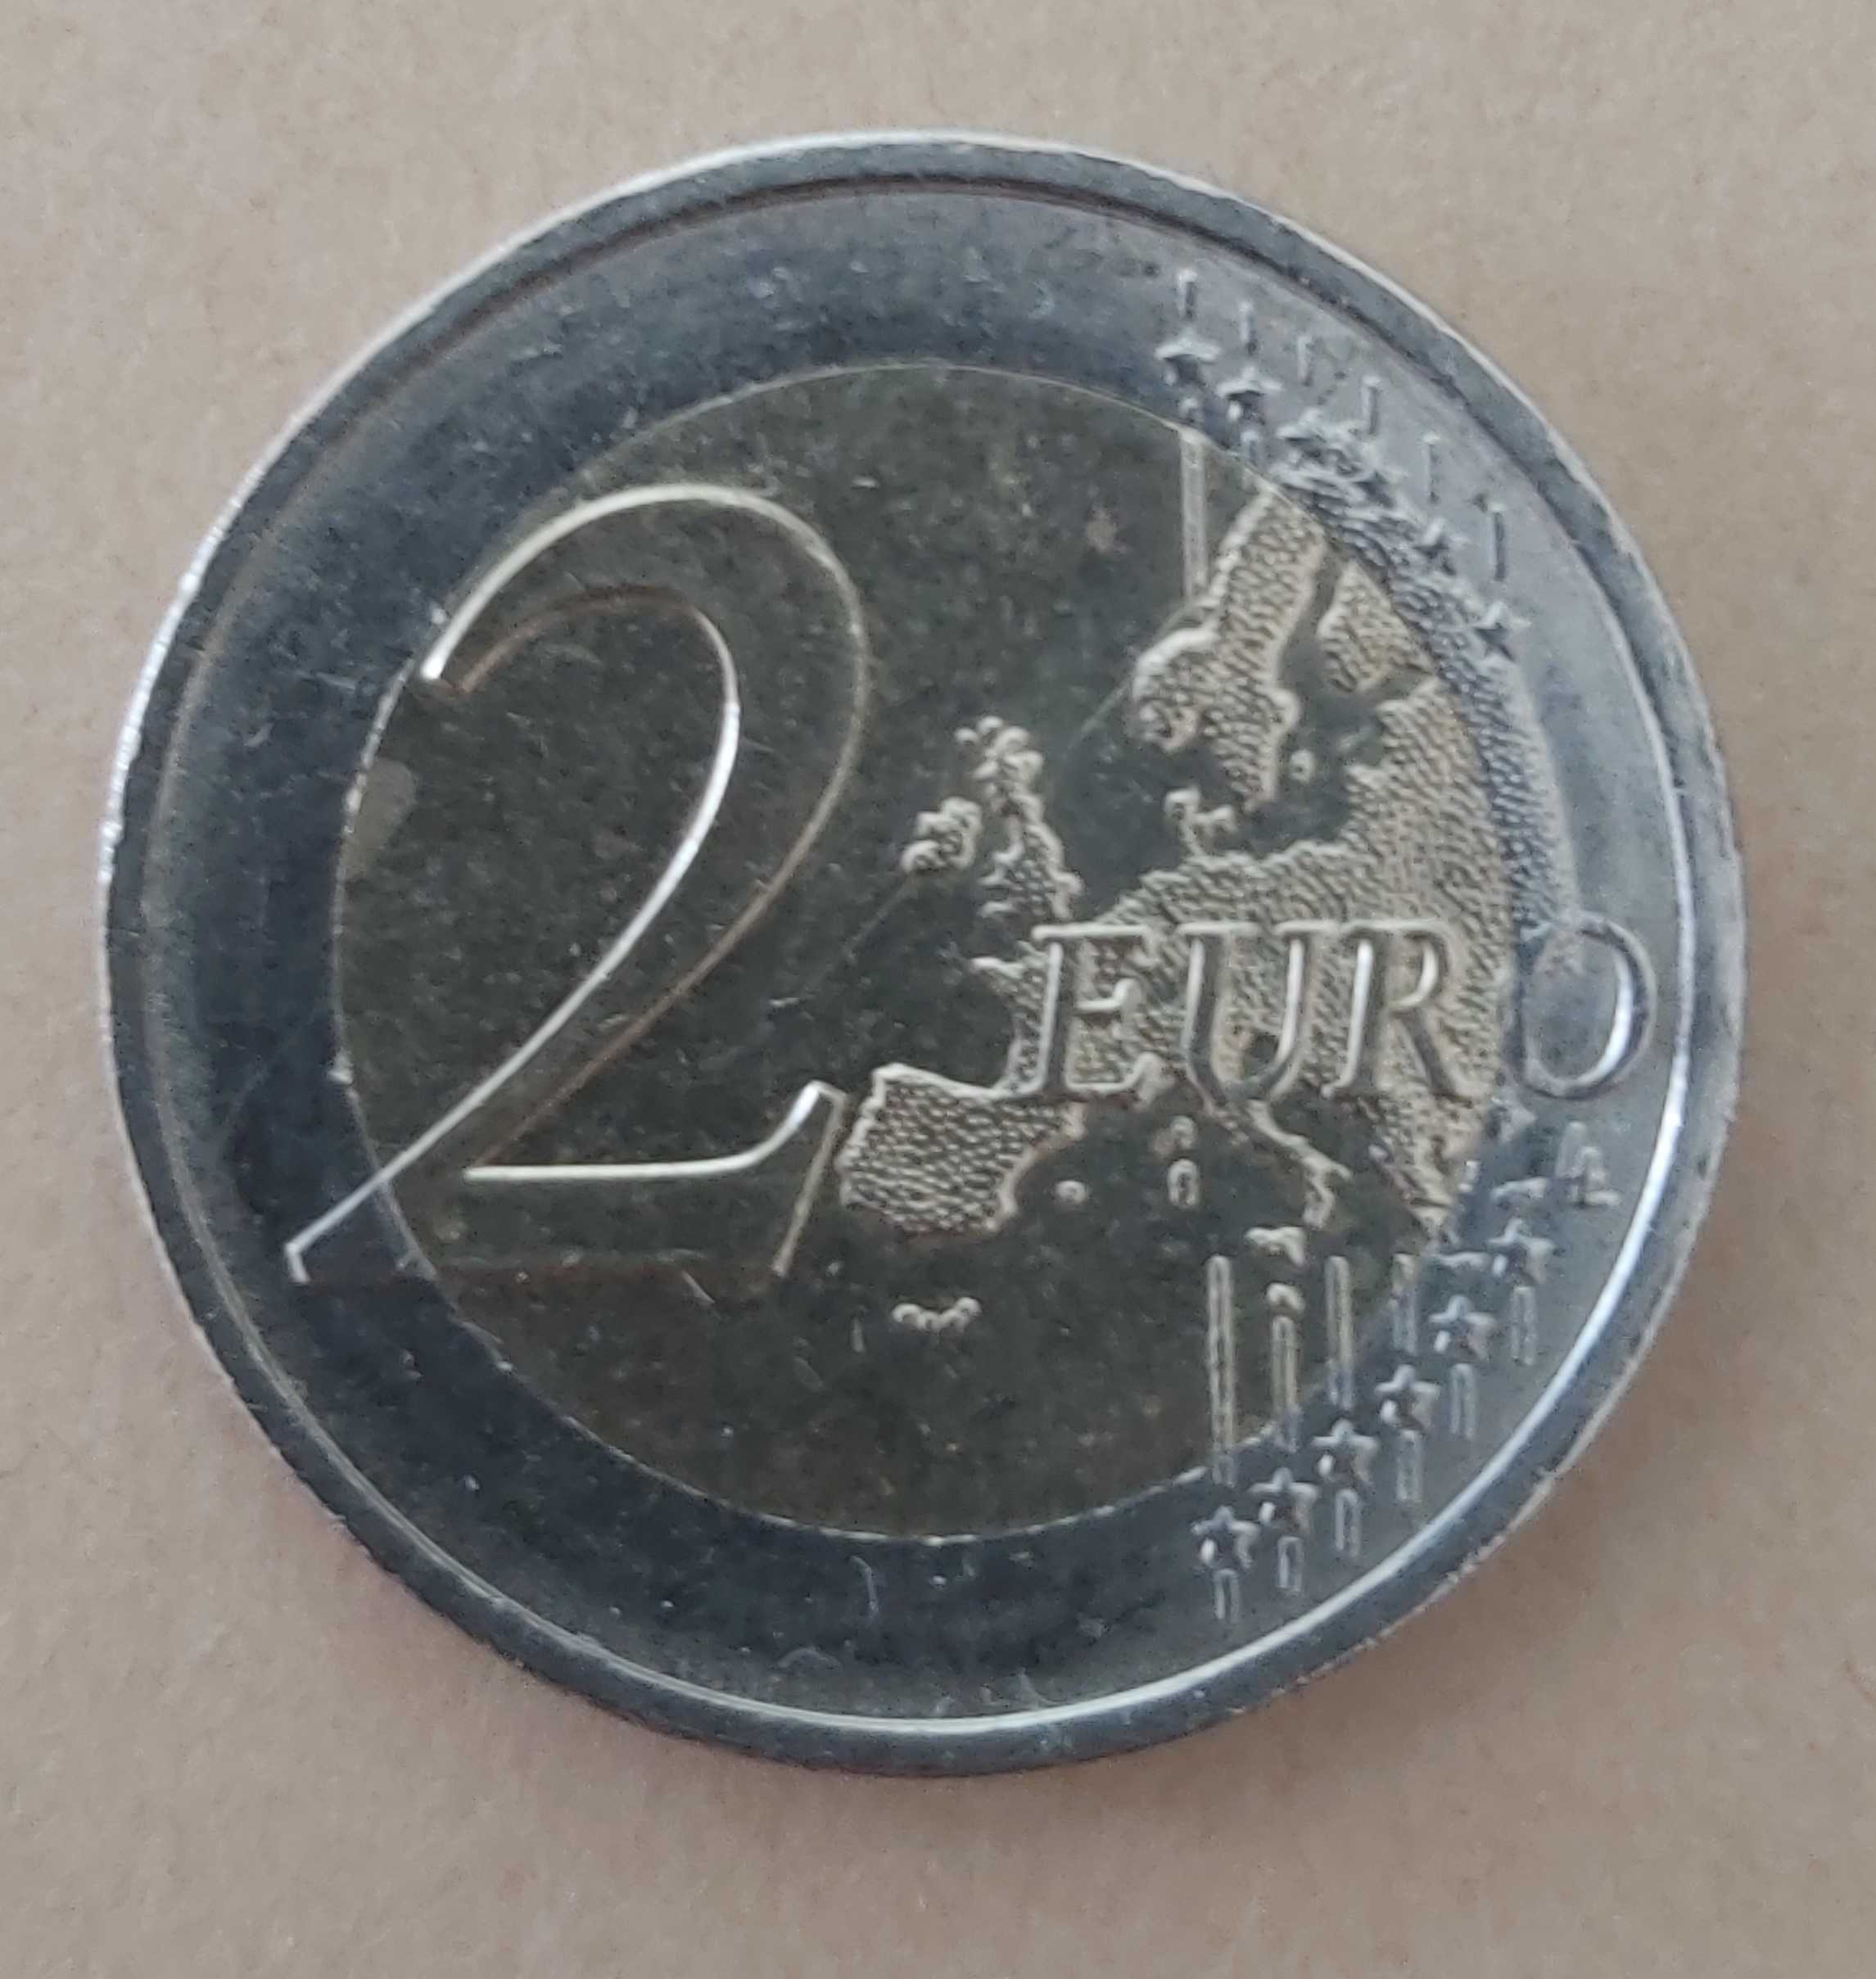 2 Euros 2018 D Alemanha Helmut Schmidt